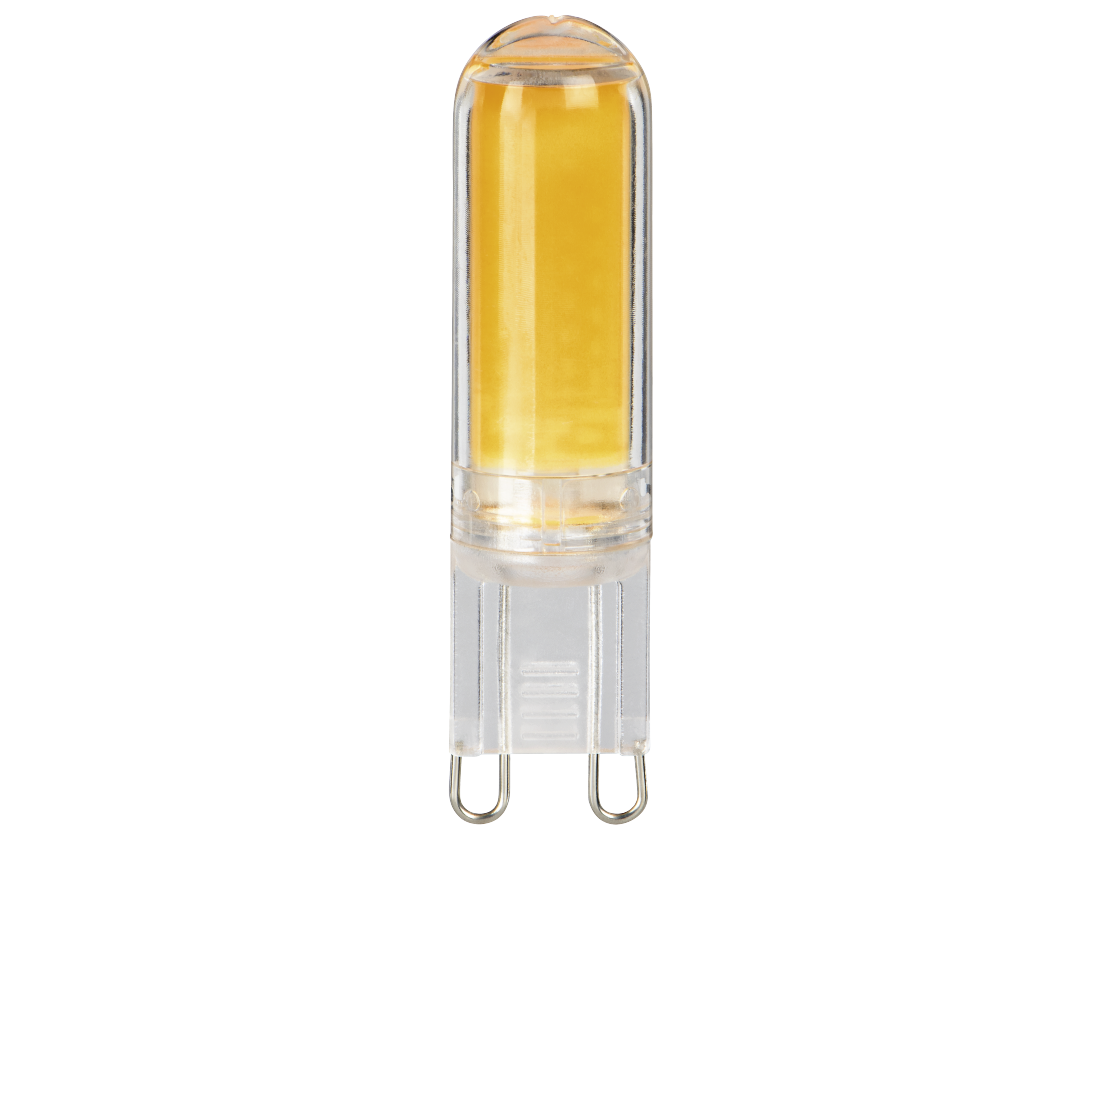 abx Druckfähige Abbildung - Xavax, LED-Lampe, G9, 430lm, ersetzt 37W, Stecksockellampe, dimmbar, Warmweiß